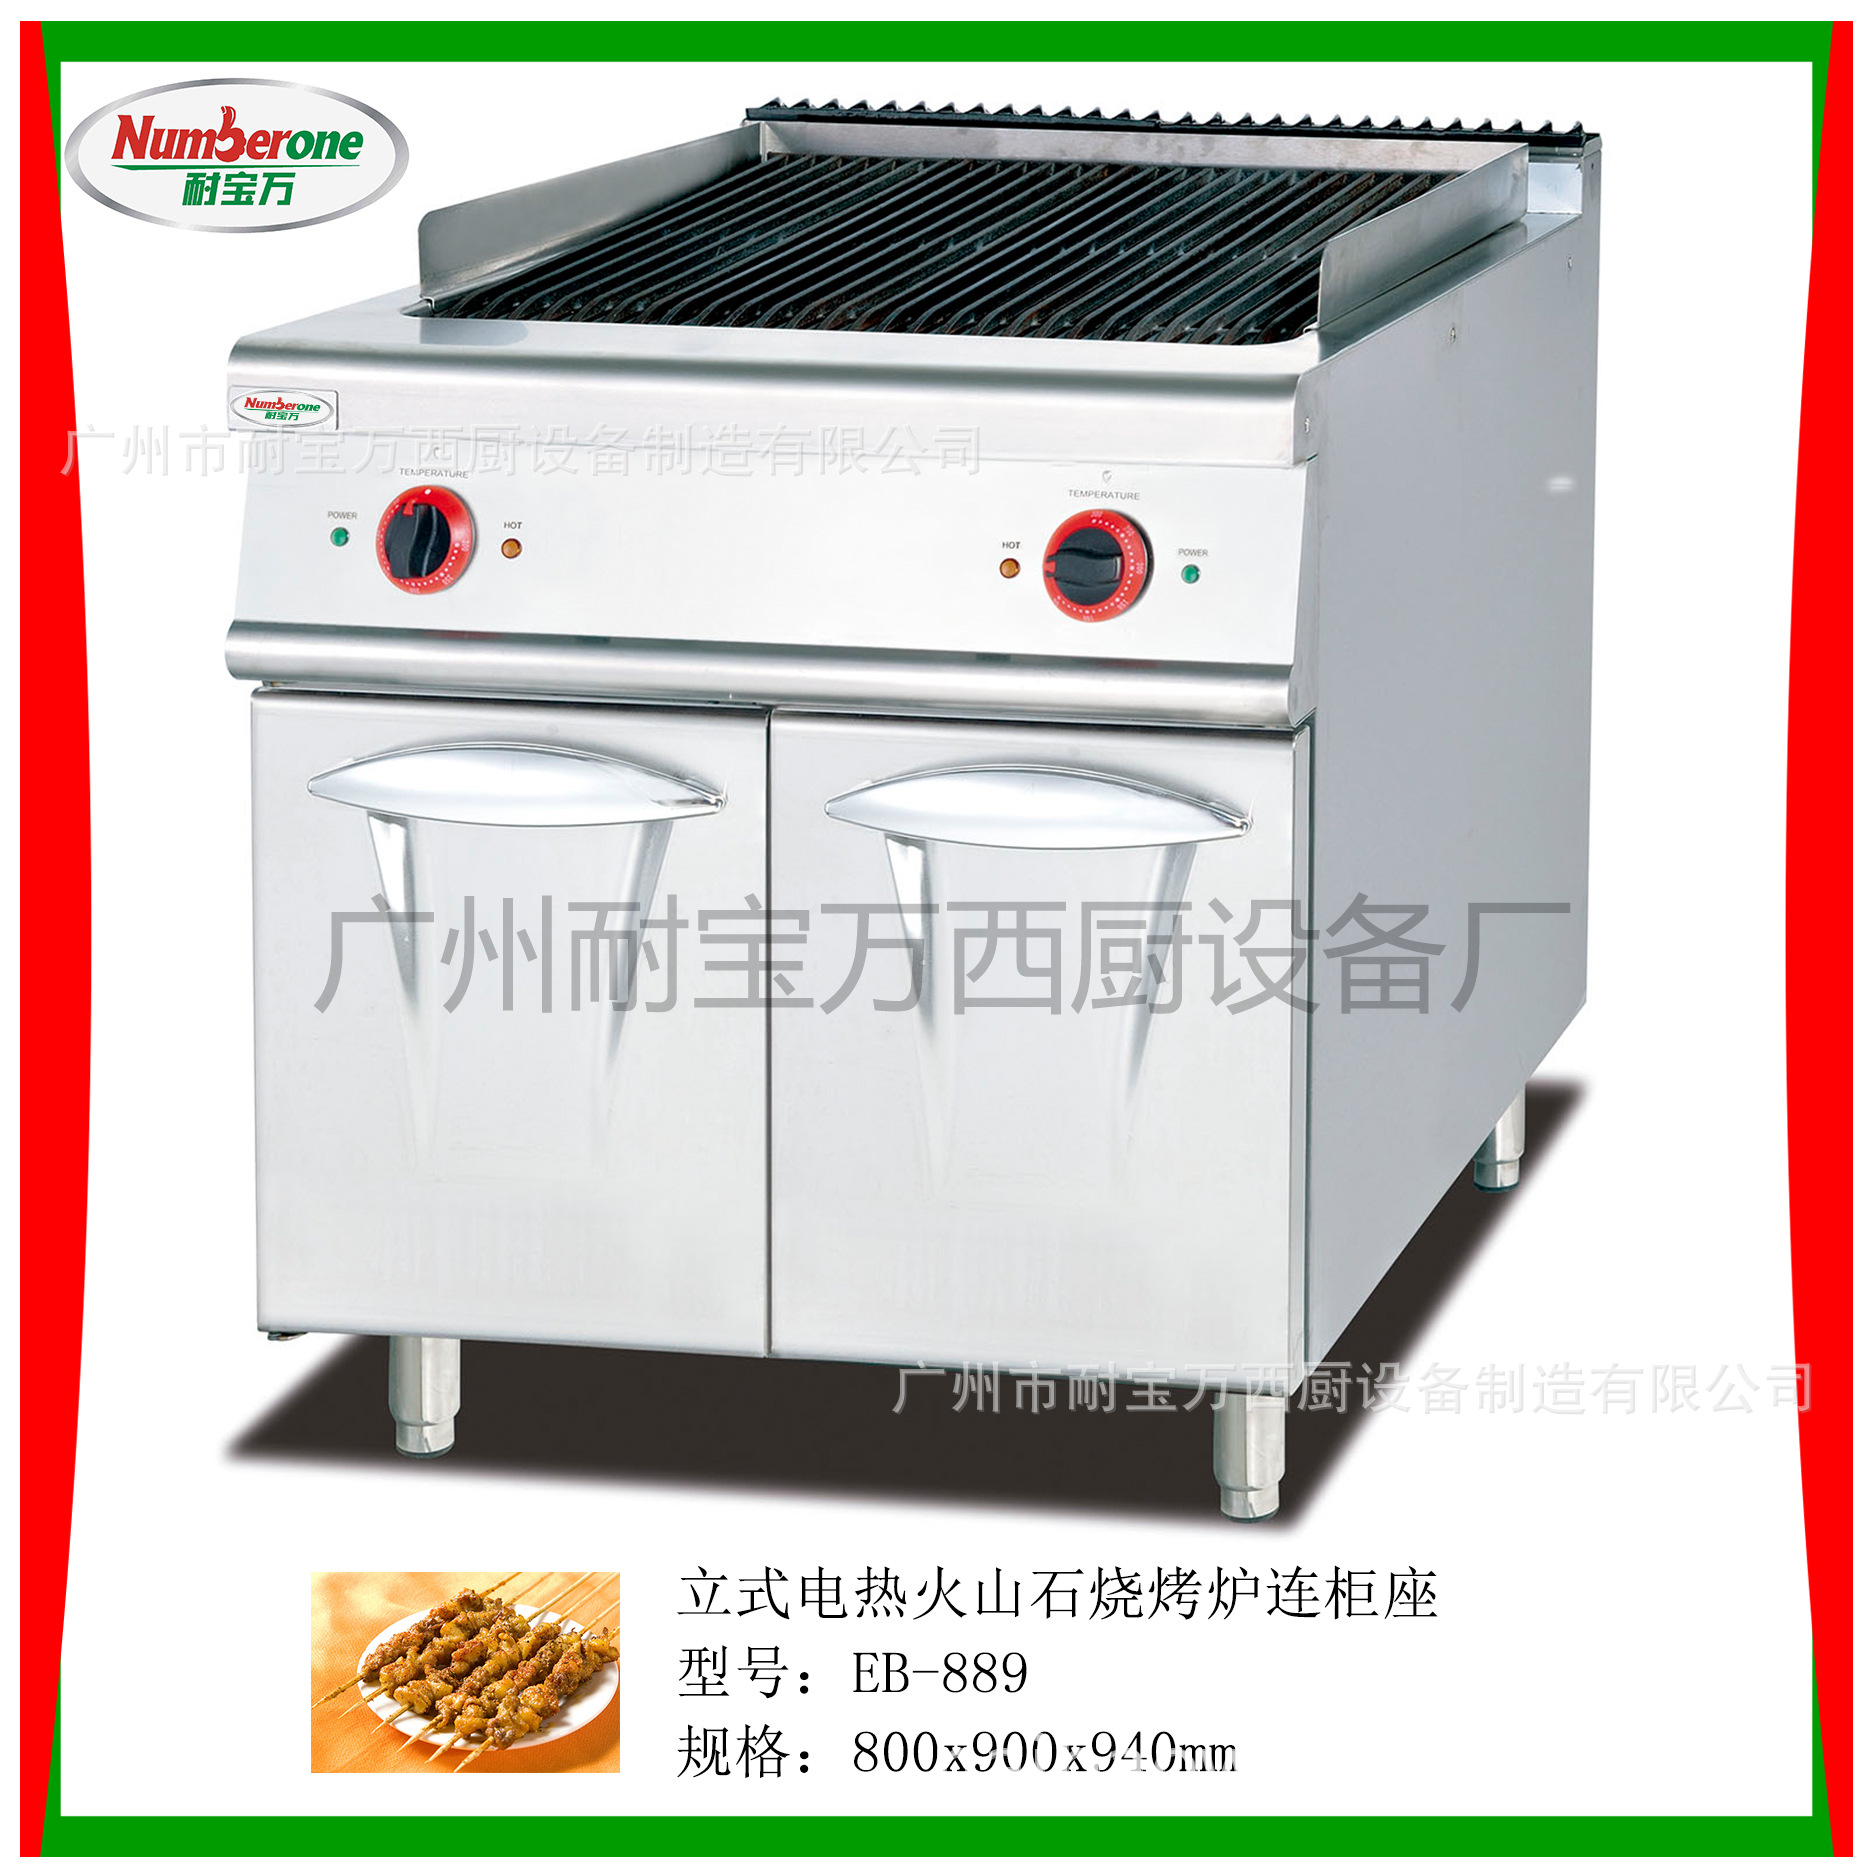 立式电扒炉连柜座 控温节能电热平扒炉厨具商用扒炉 多功能厨具